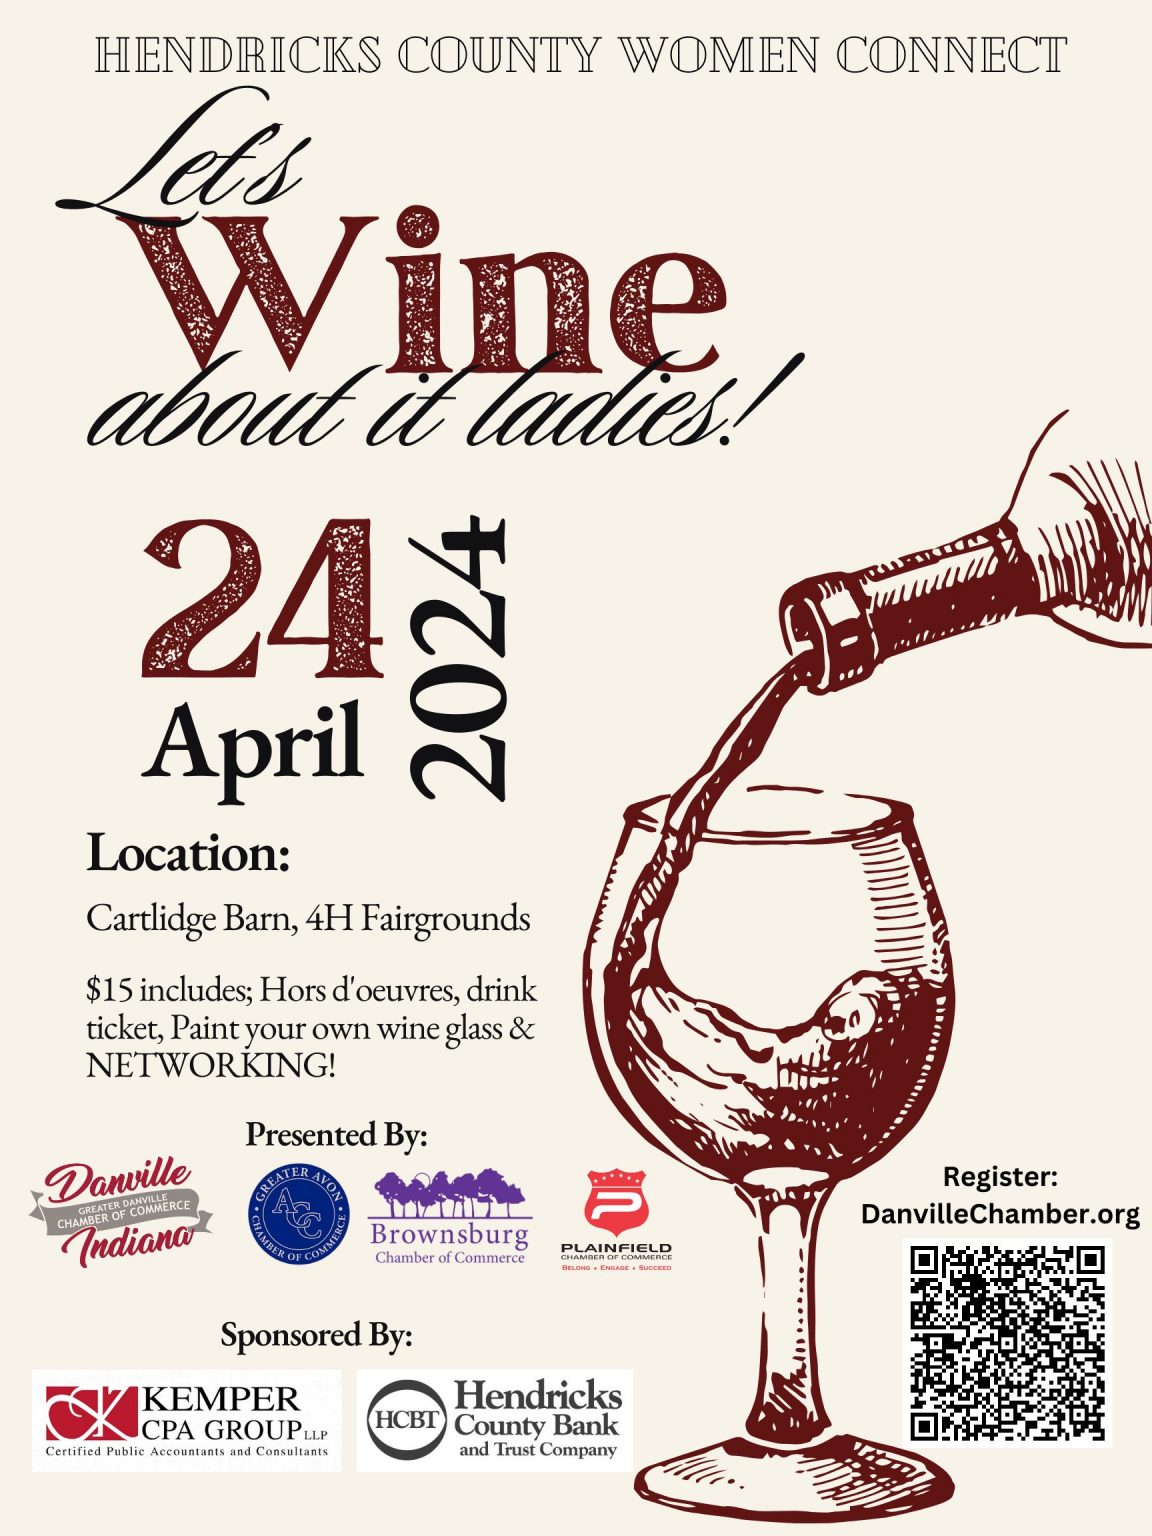 April 24 - Let's Wine About It